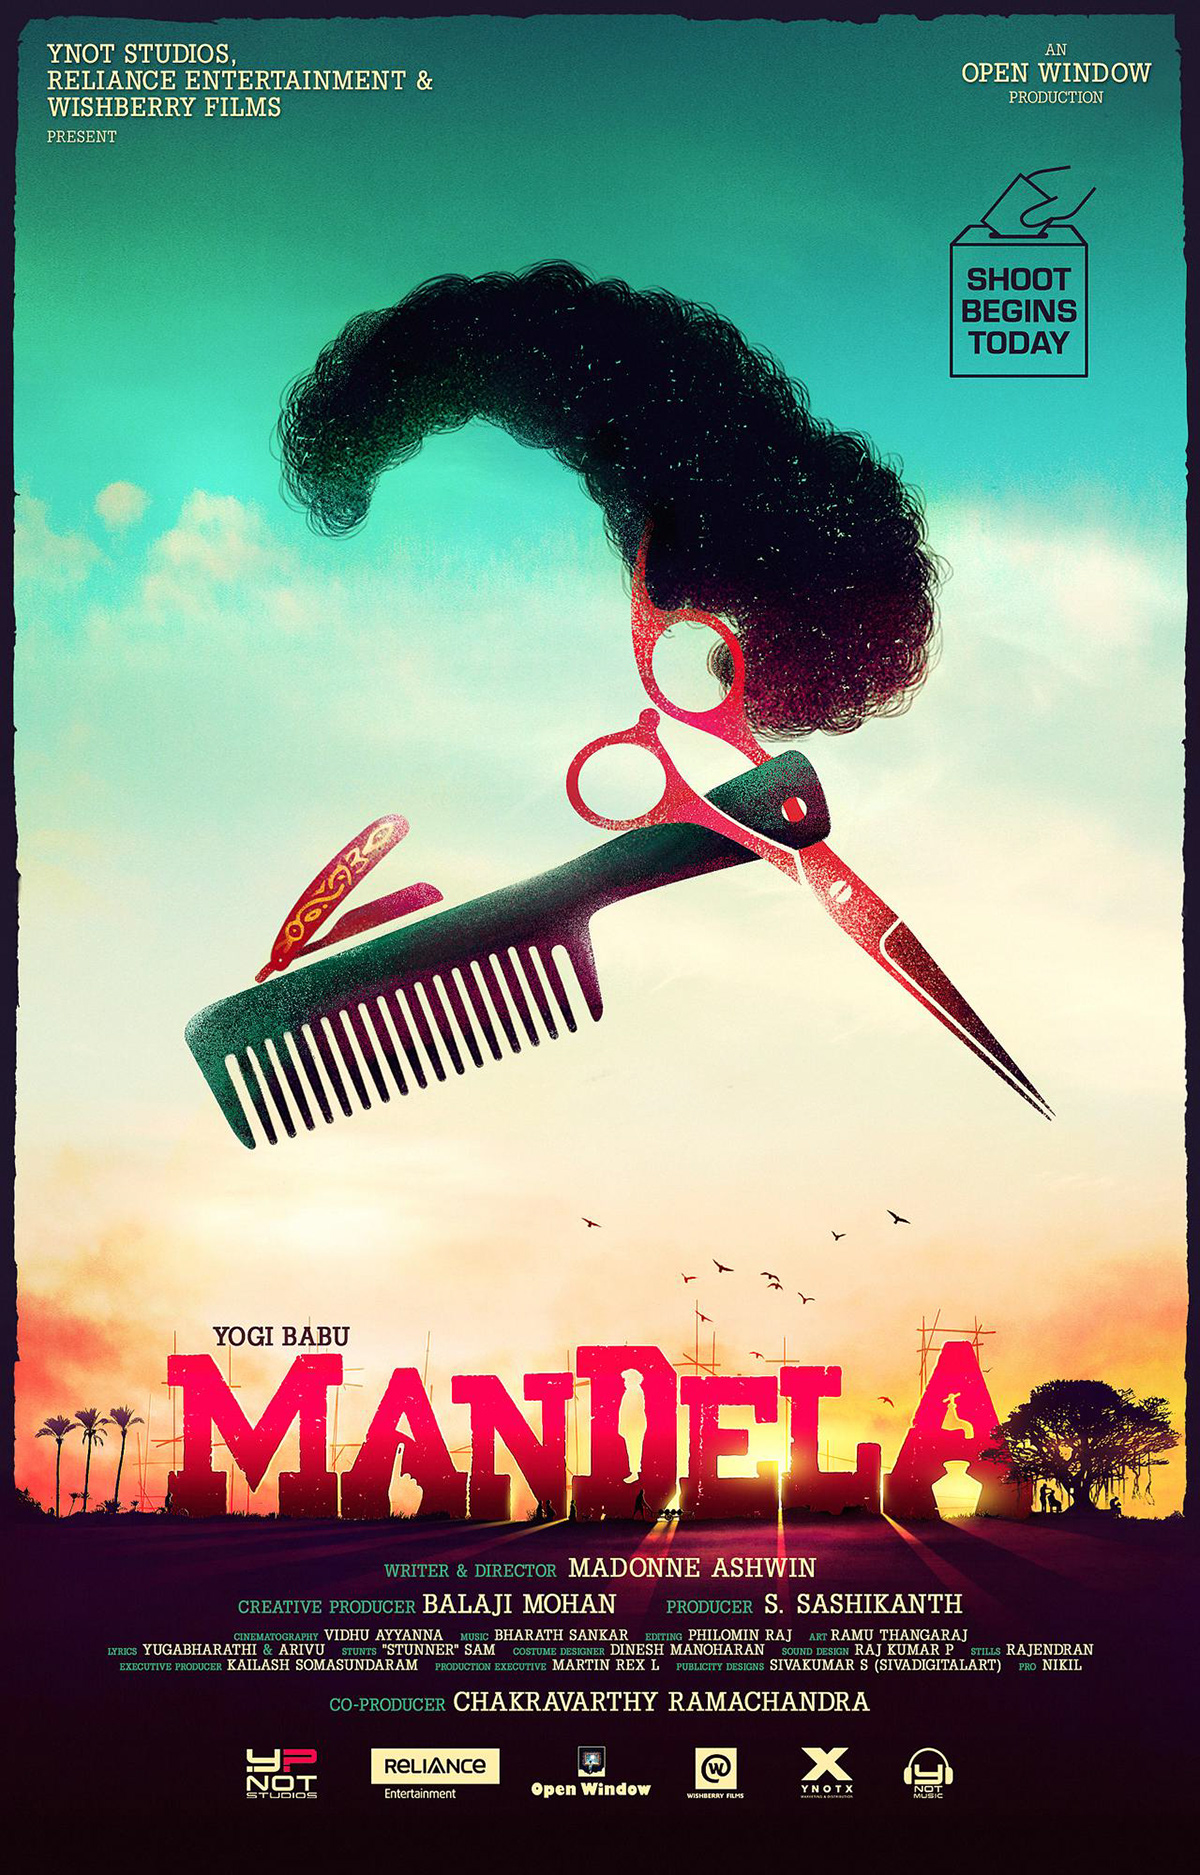 sivadigitalart art Digital Art  ILLUSTRATION  minimal poster movie Mandela Poster Design India